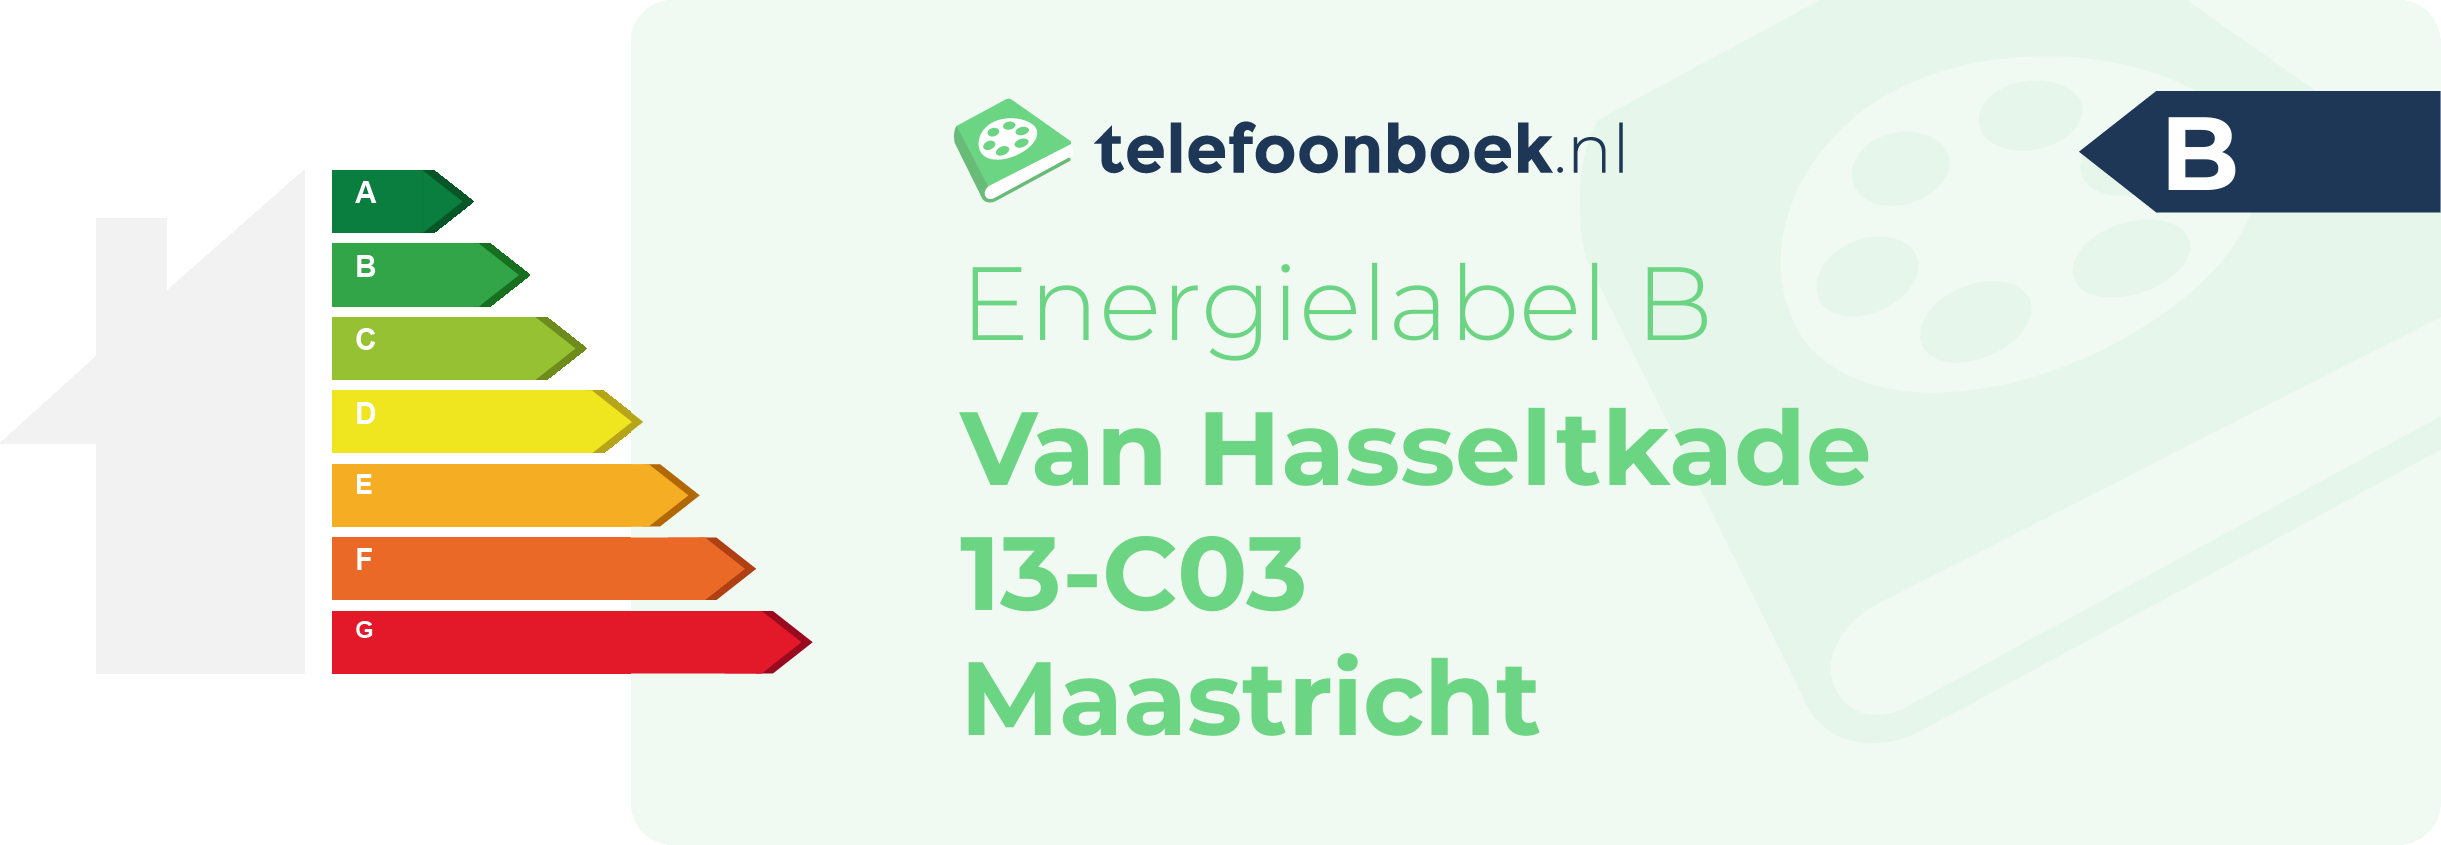 Energielabel Van Hasseltkade 13-C03 Maastricht